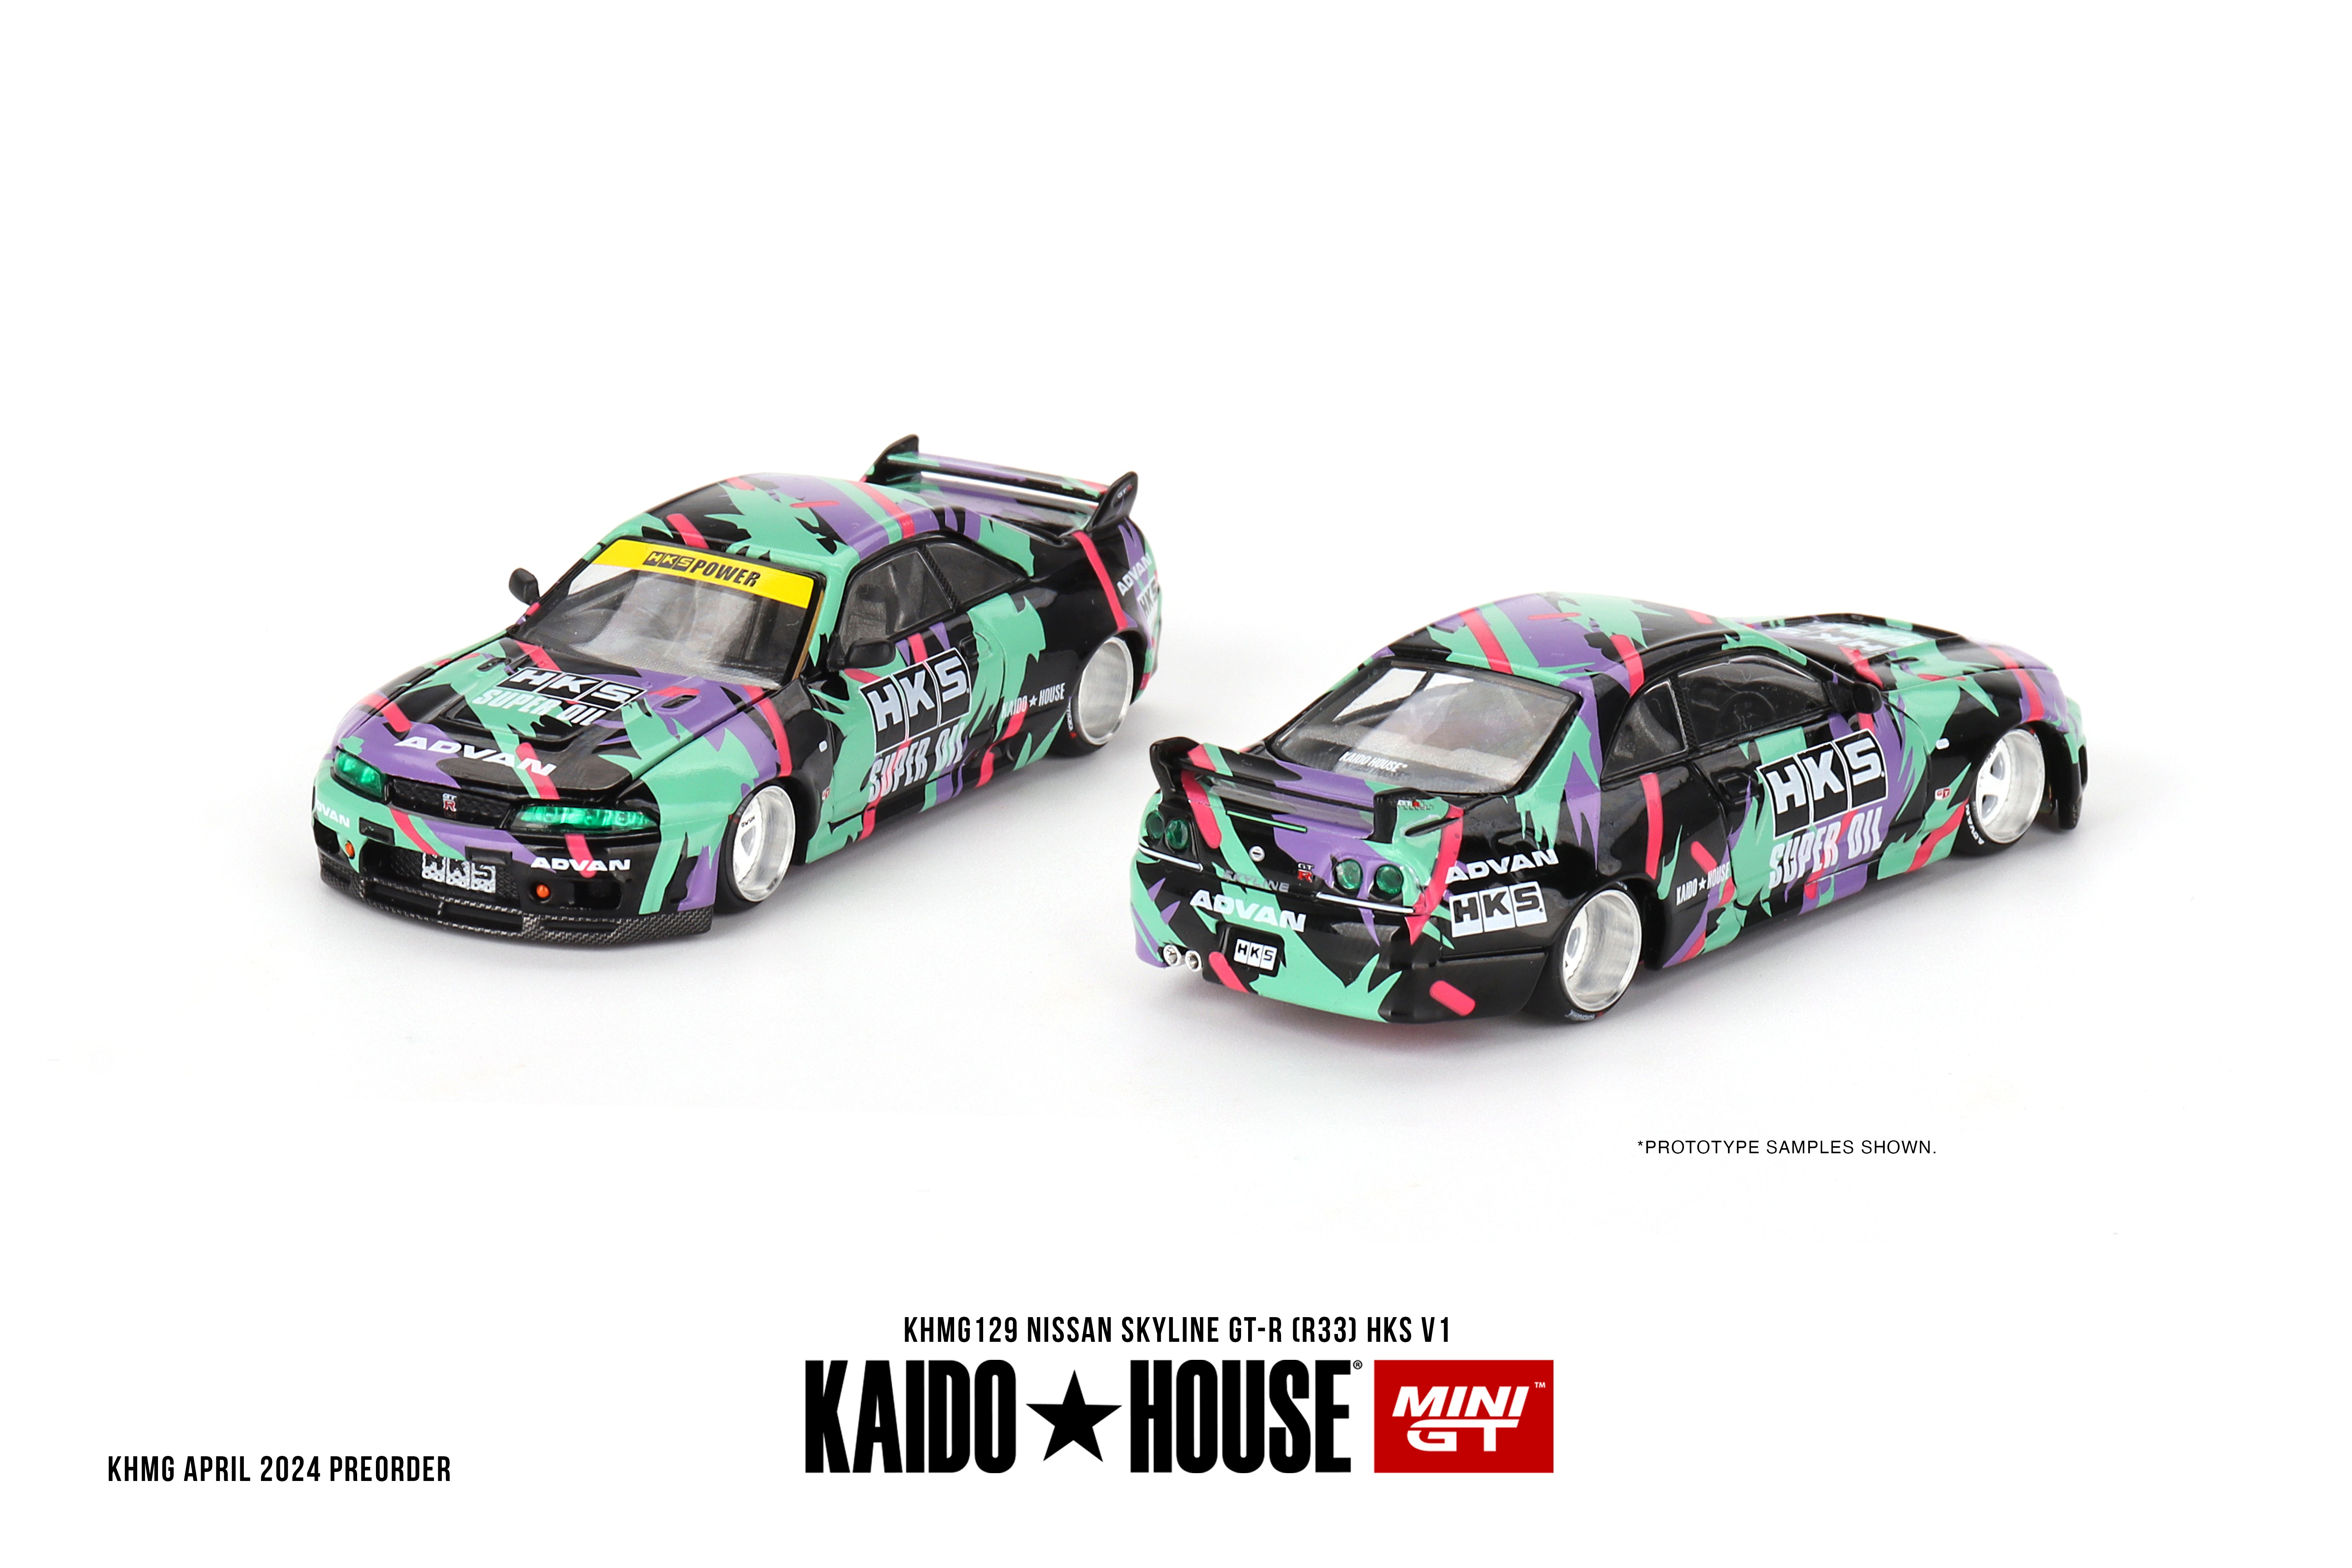 Mini GT Kaido House - Pre-Order - Nissan Skyline GT-R (R33) HKS V1 